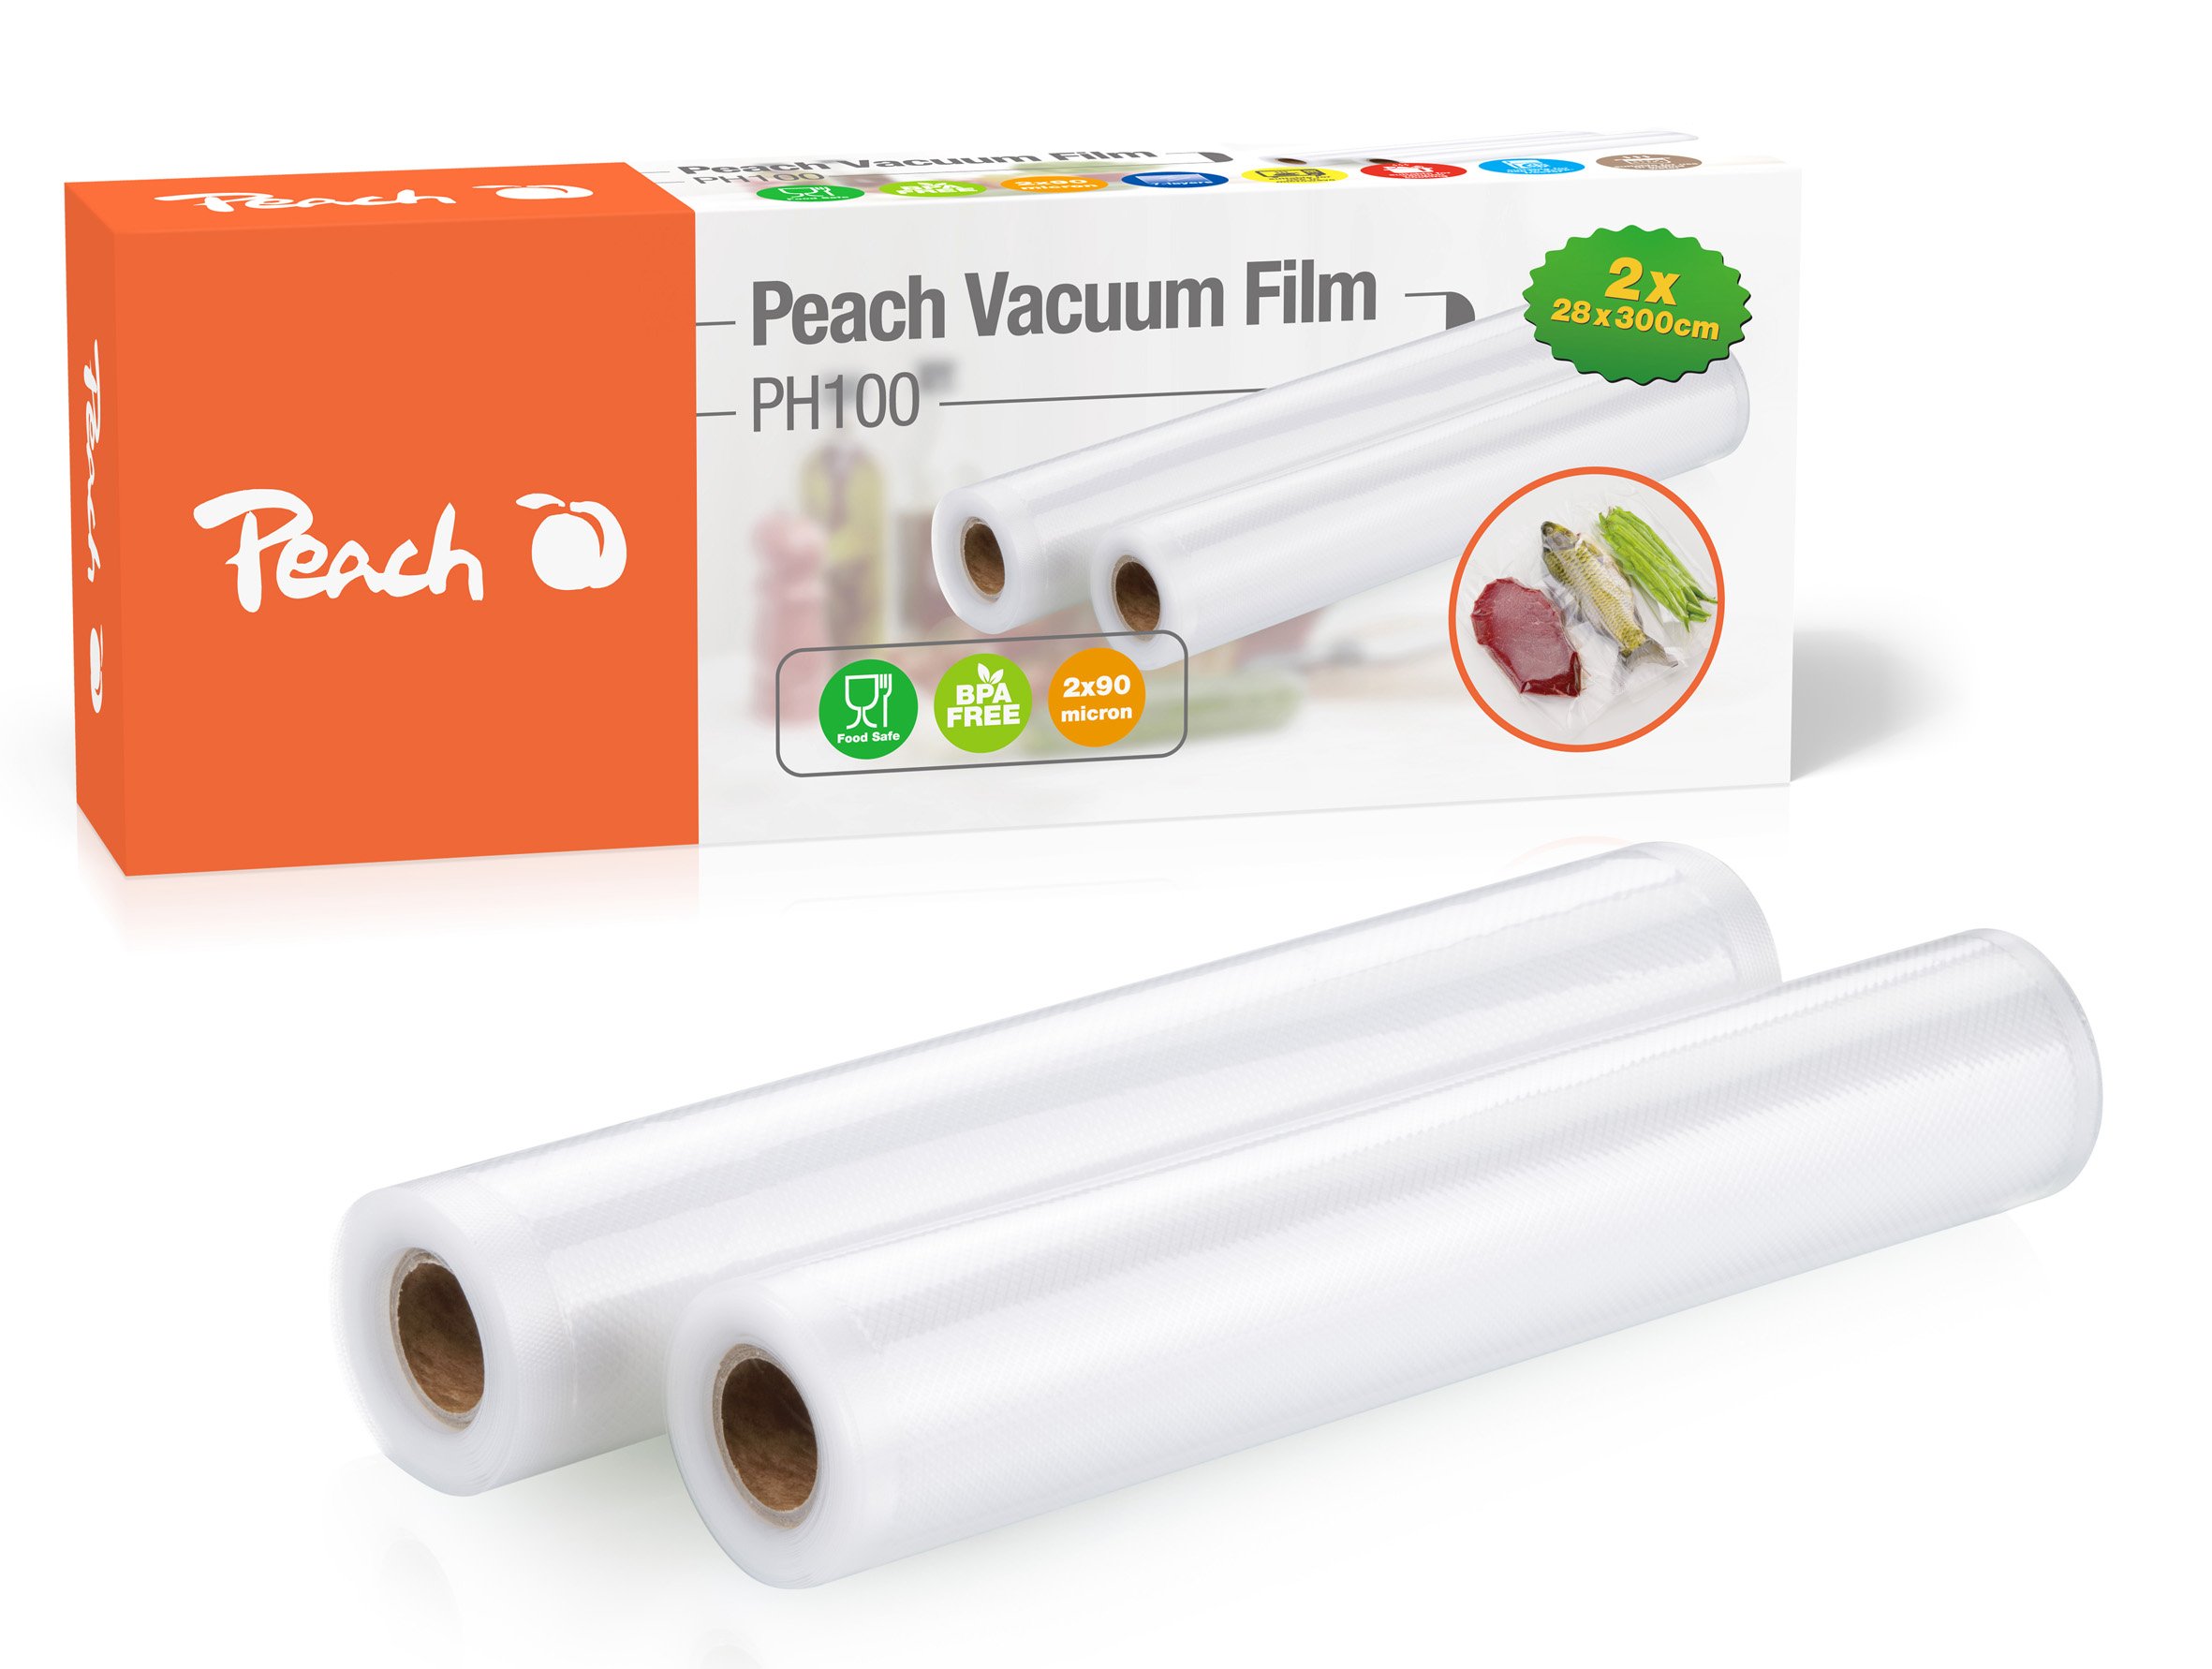 Peach Vacuum Film Vakuumierfolie PH100 28x300cm 2x90micron Pic1